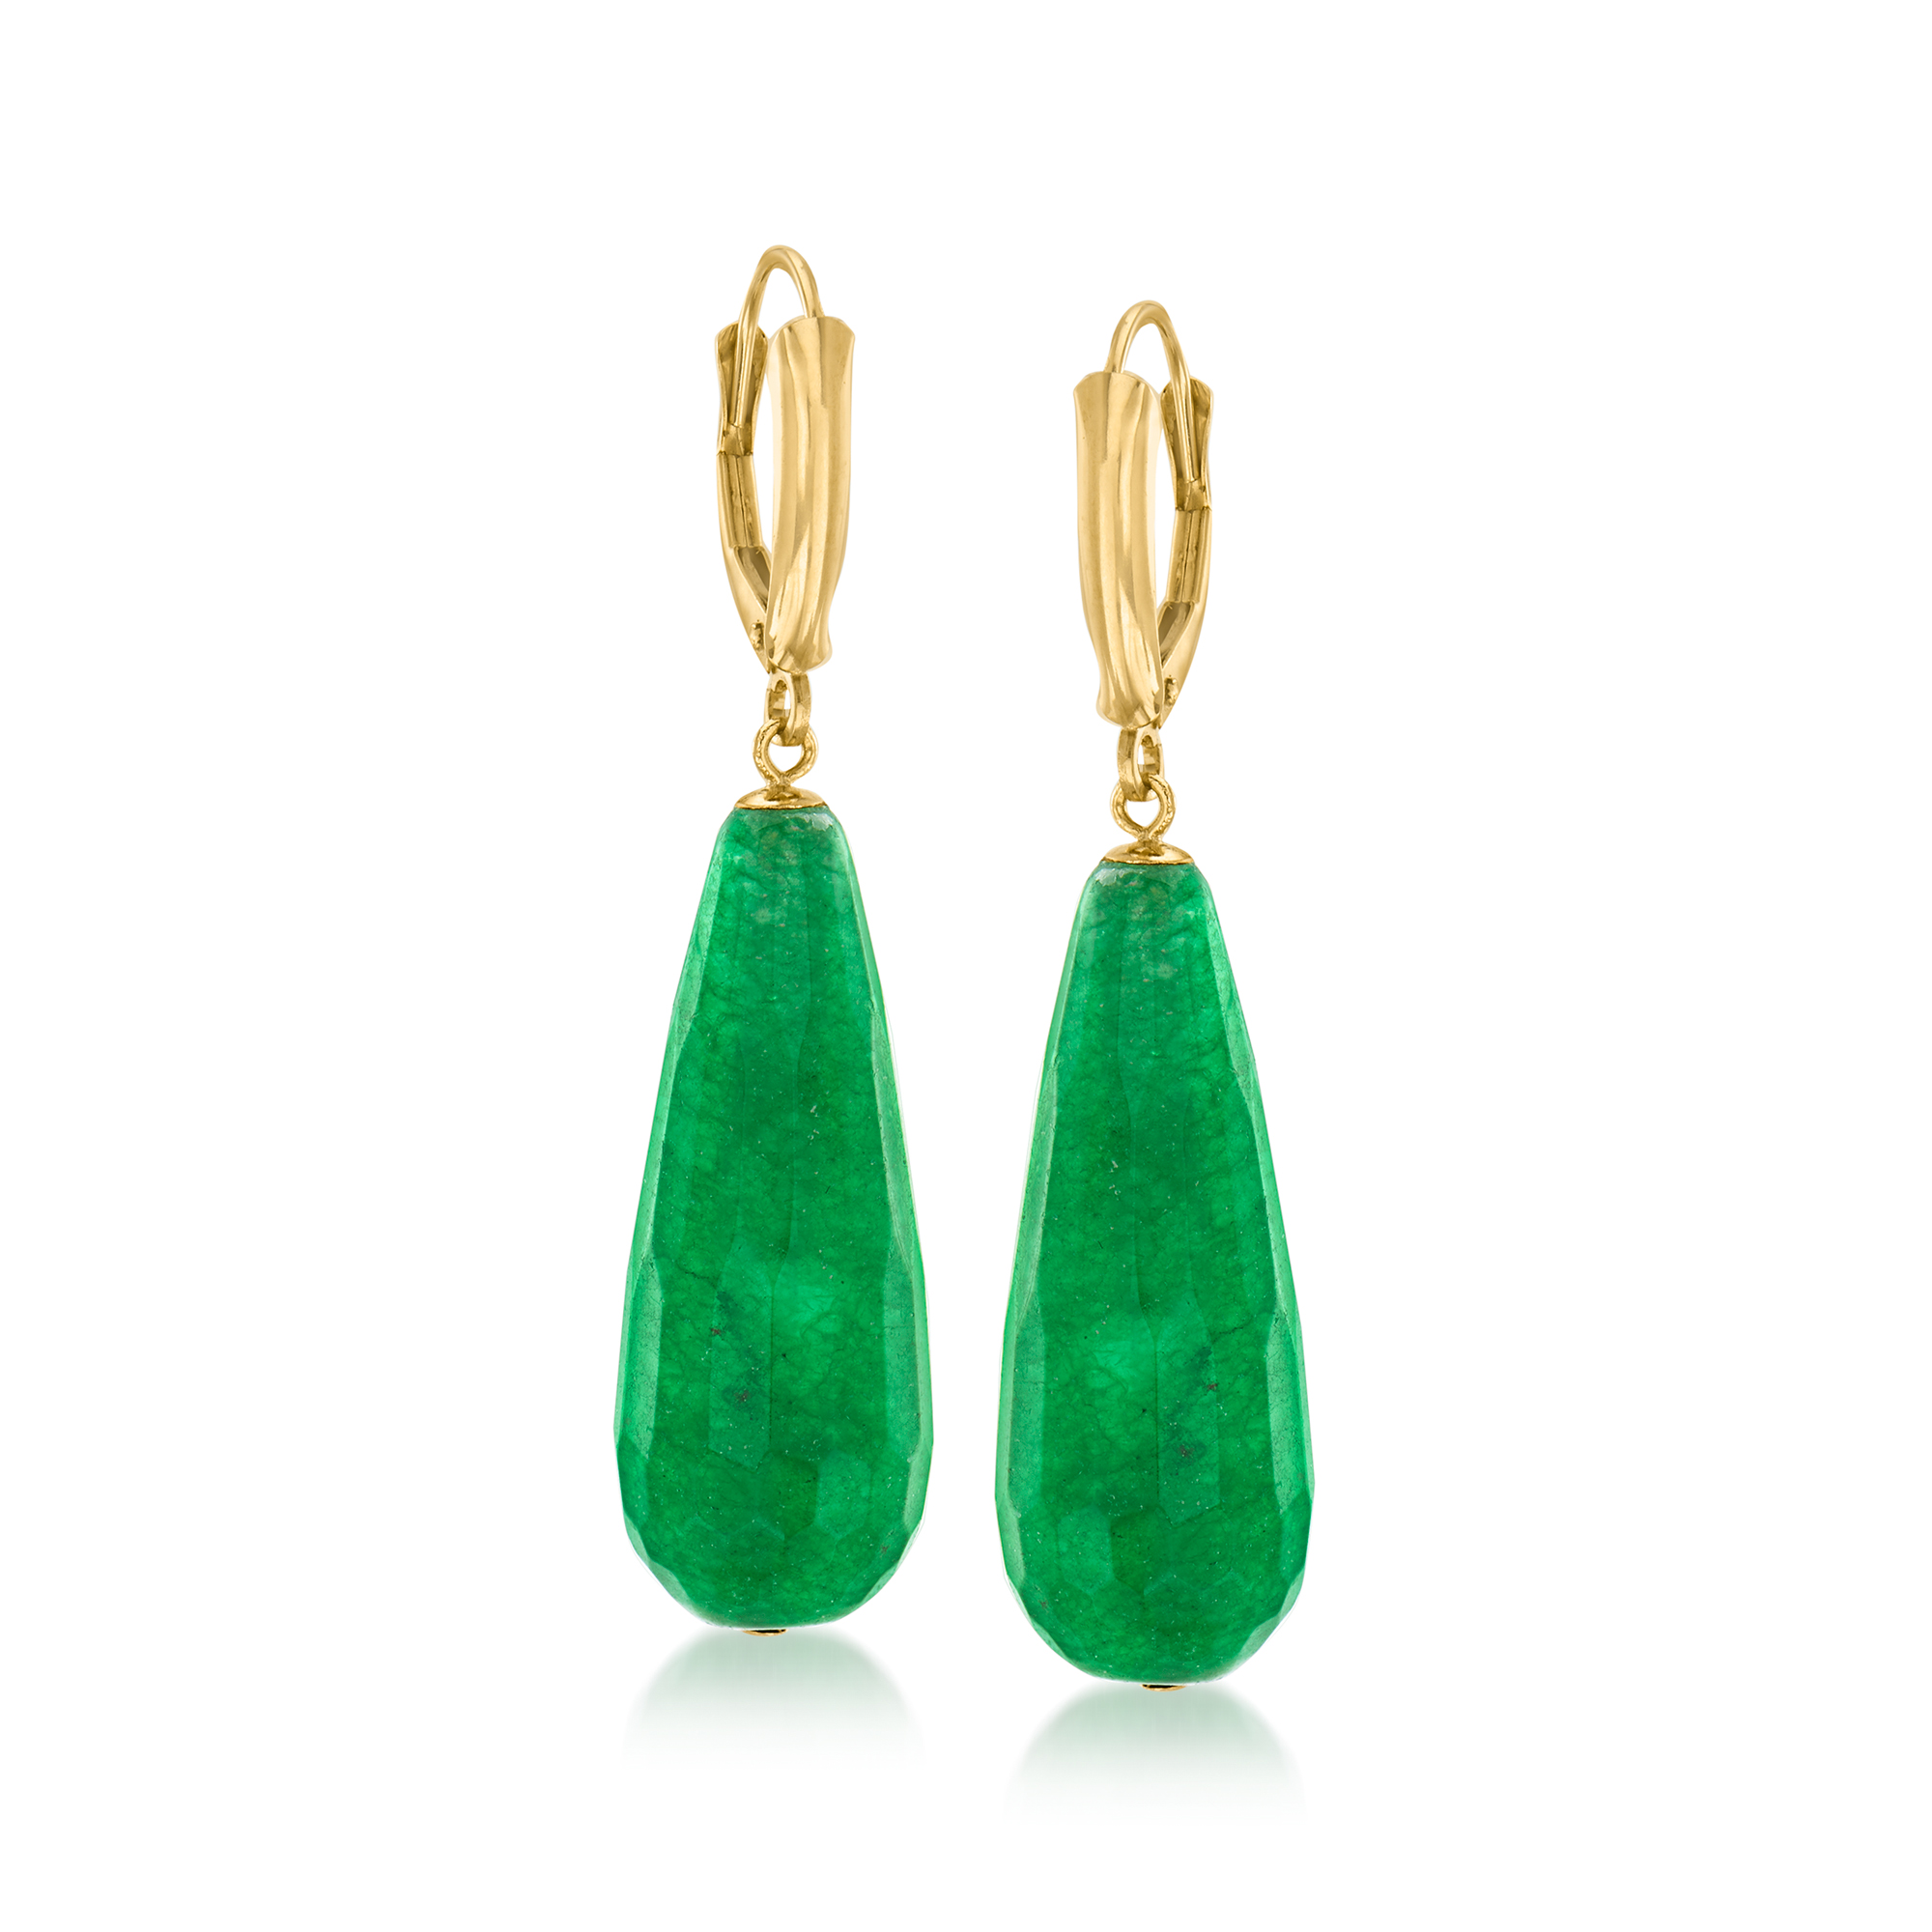 elegant earrings Jade earrings ceremony earrings silver and jade earrings vintage earrings green jade earrings